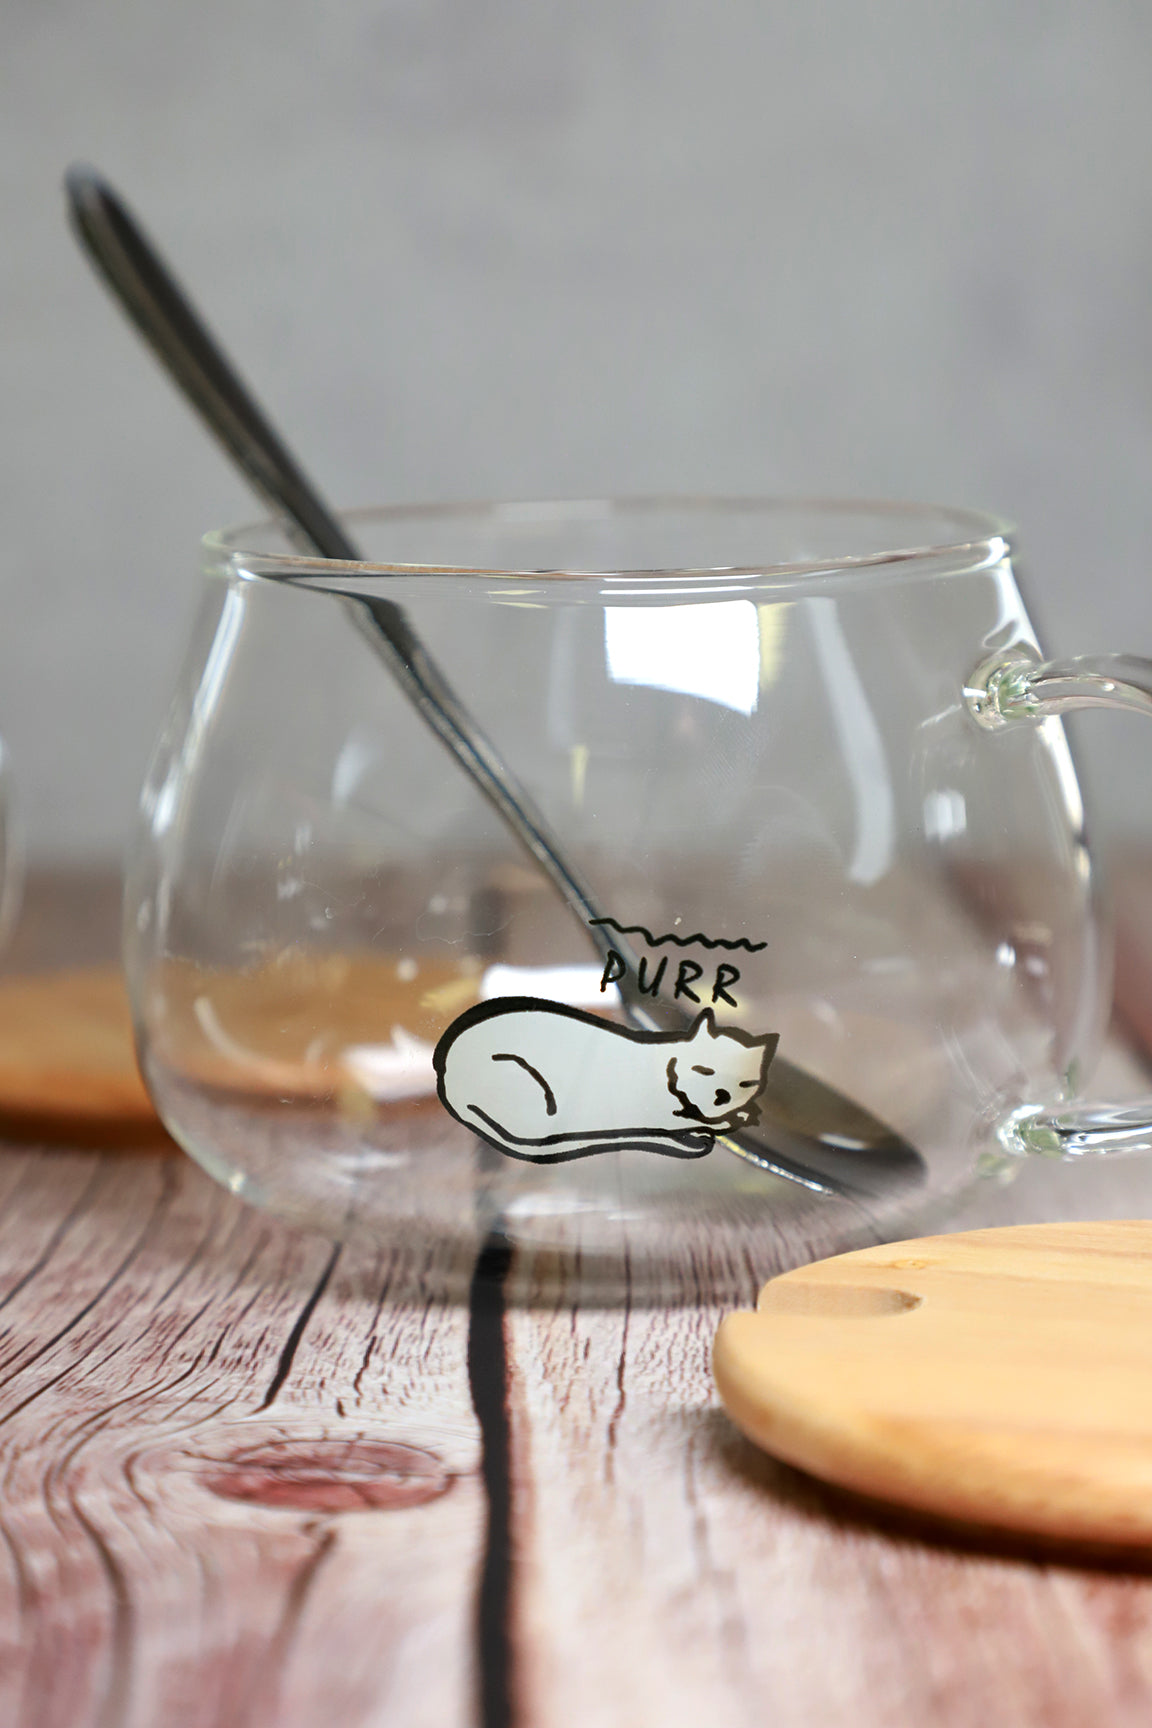 Cute Fruity Mug Glass Mug with Spoon and Wood Lid – GinkgoHome